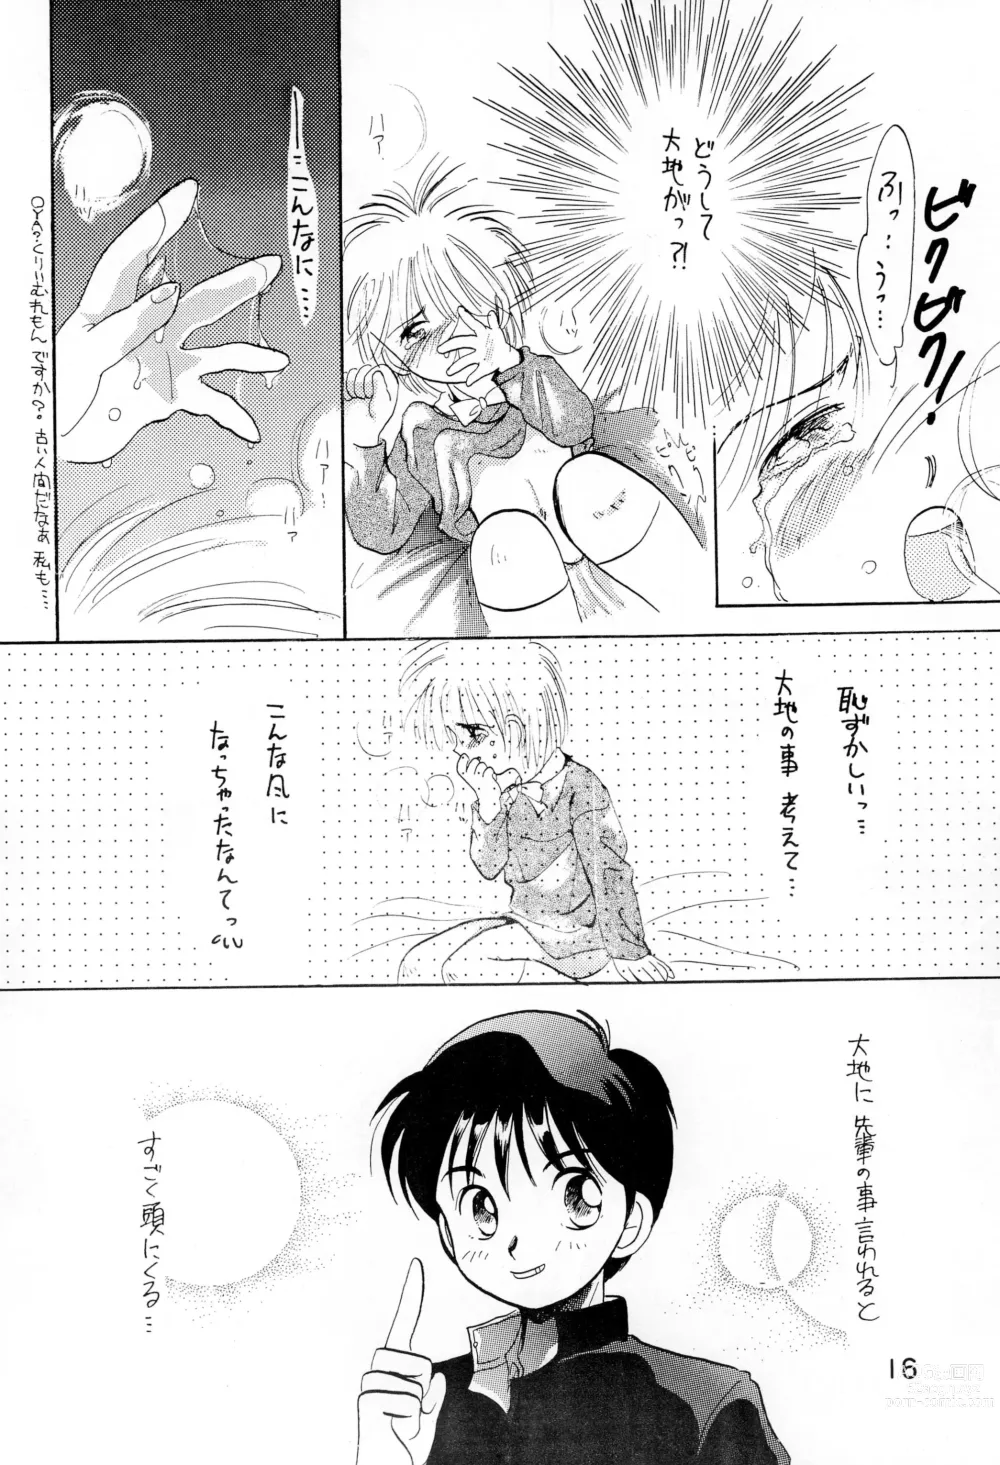 Page 16 of doujinshi Uwasa no Himeko